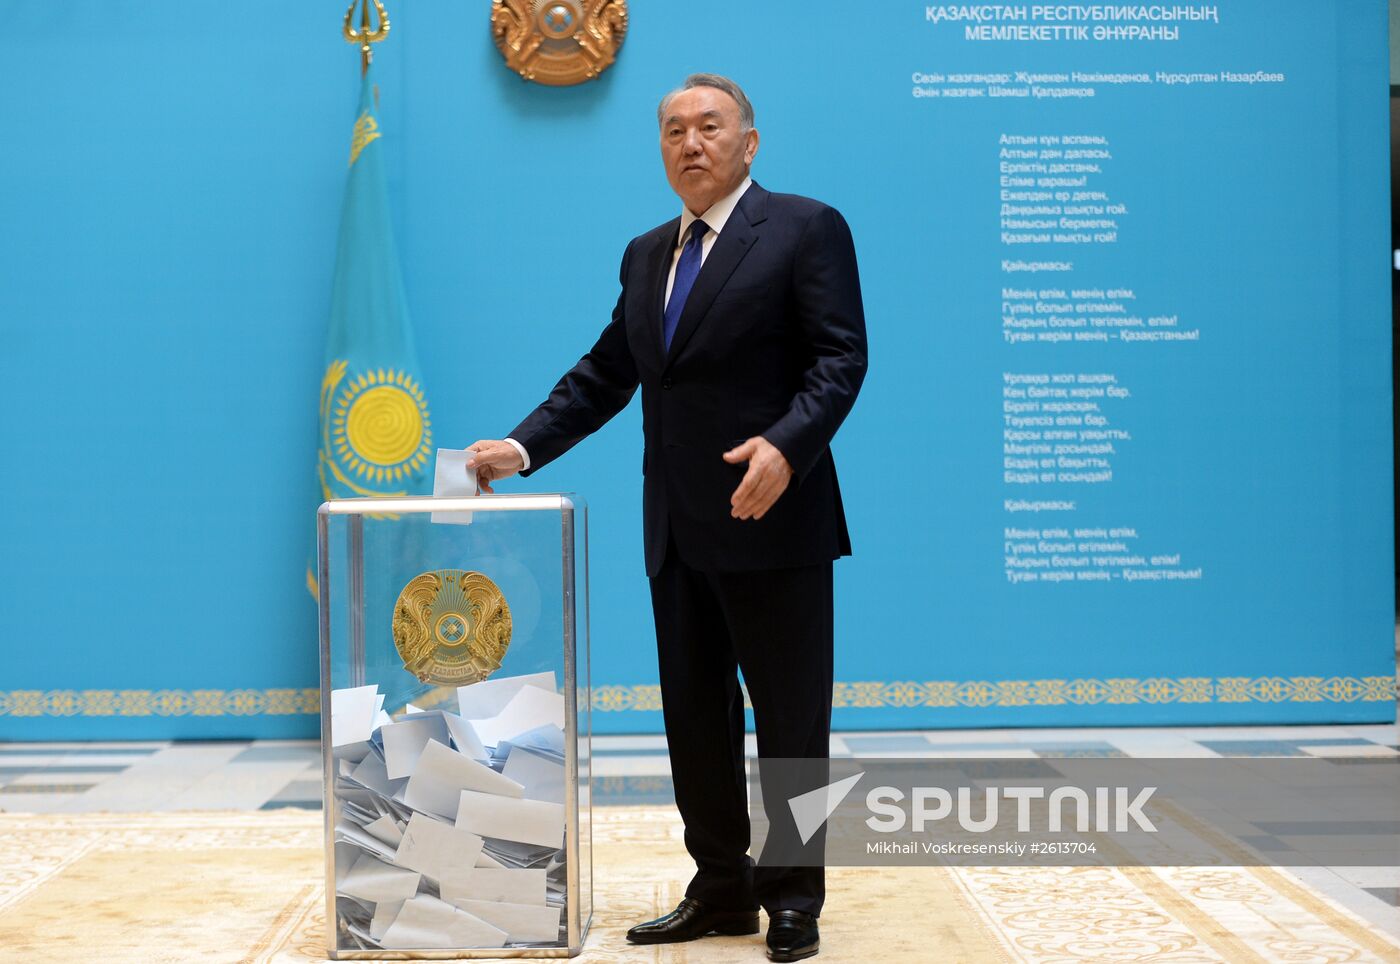 Early presidential election in Kazakhstan